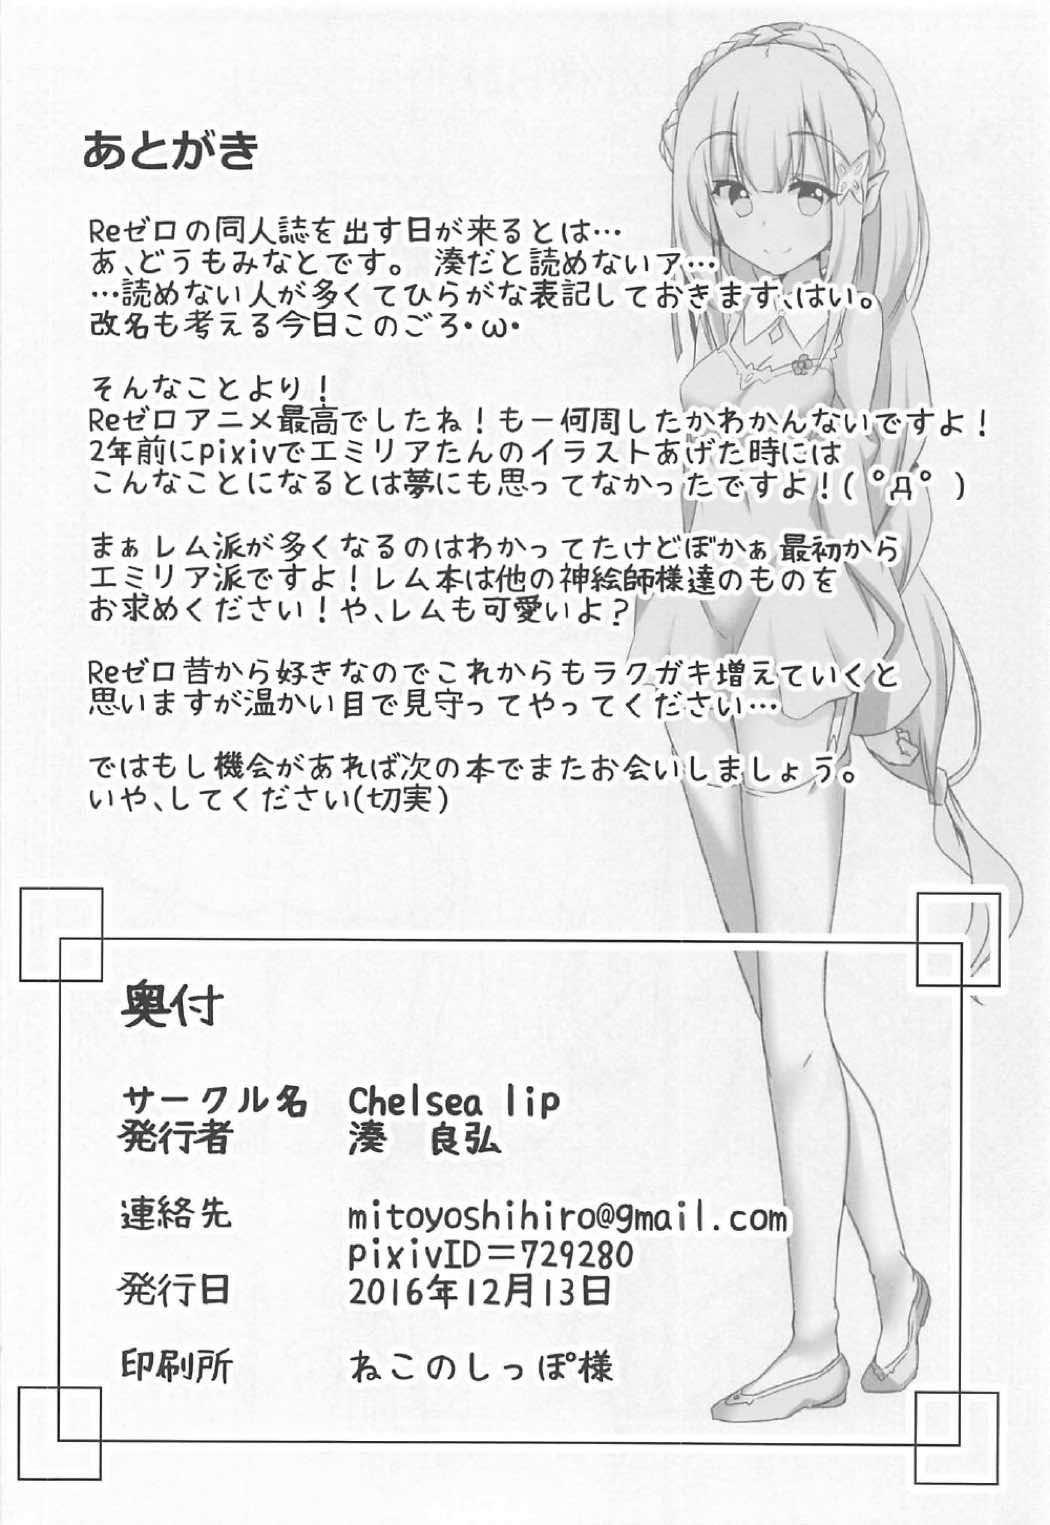 Australian Uchi no Heroine Chouzetsu Choroin - Re zero kara hajimeru isekai seikatsu Teacher - Page 21